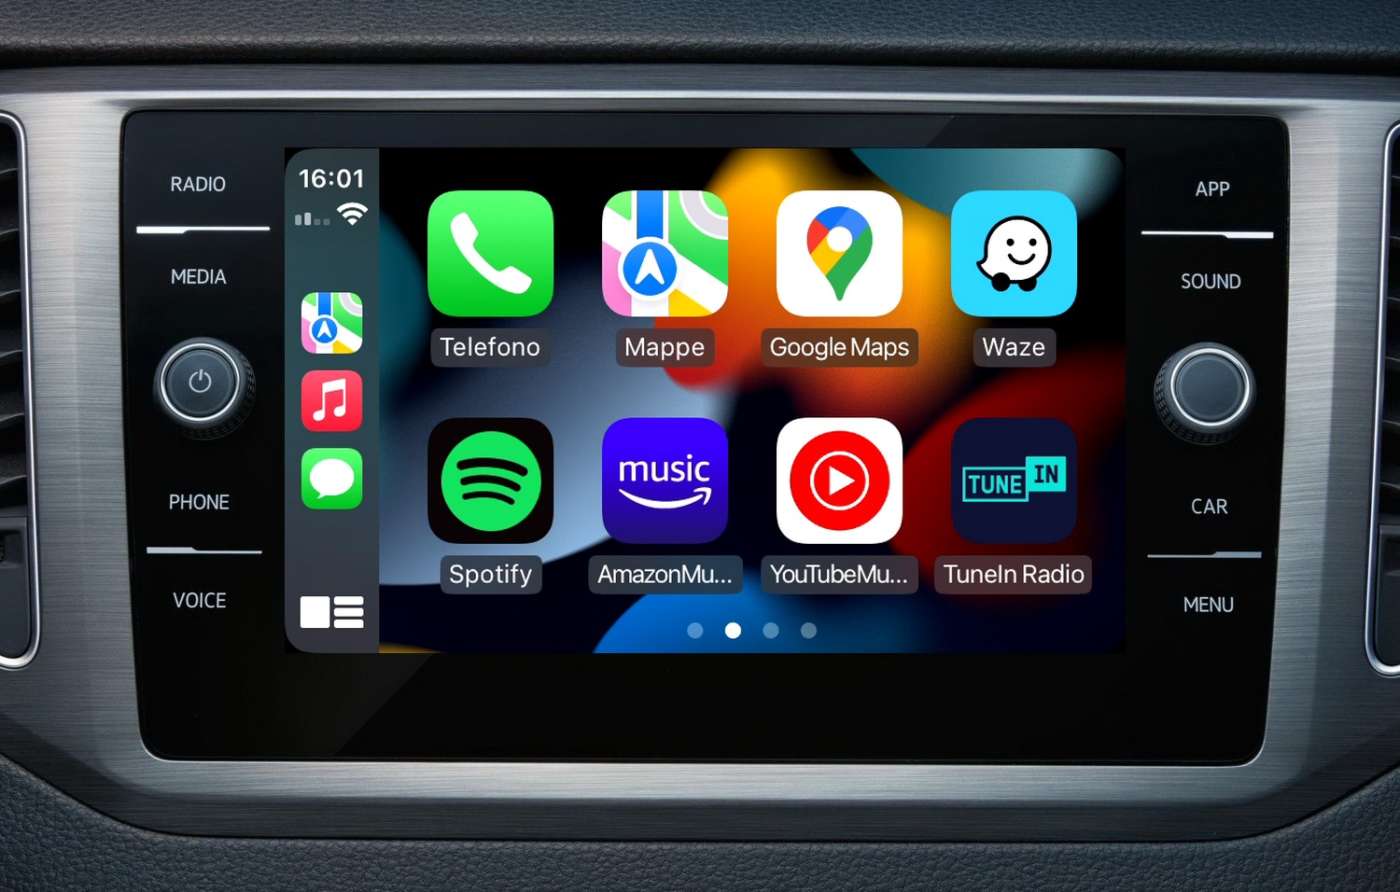 App per Android auto e Apple CarPlay: le migliori - Rent&Drive